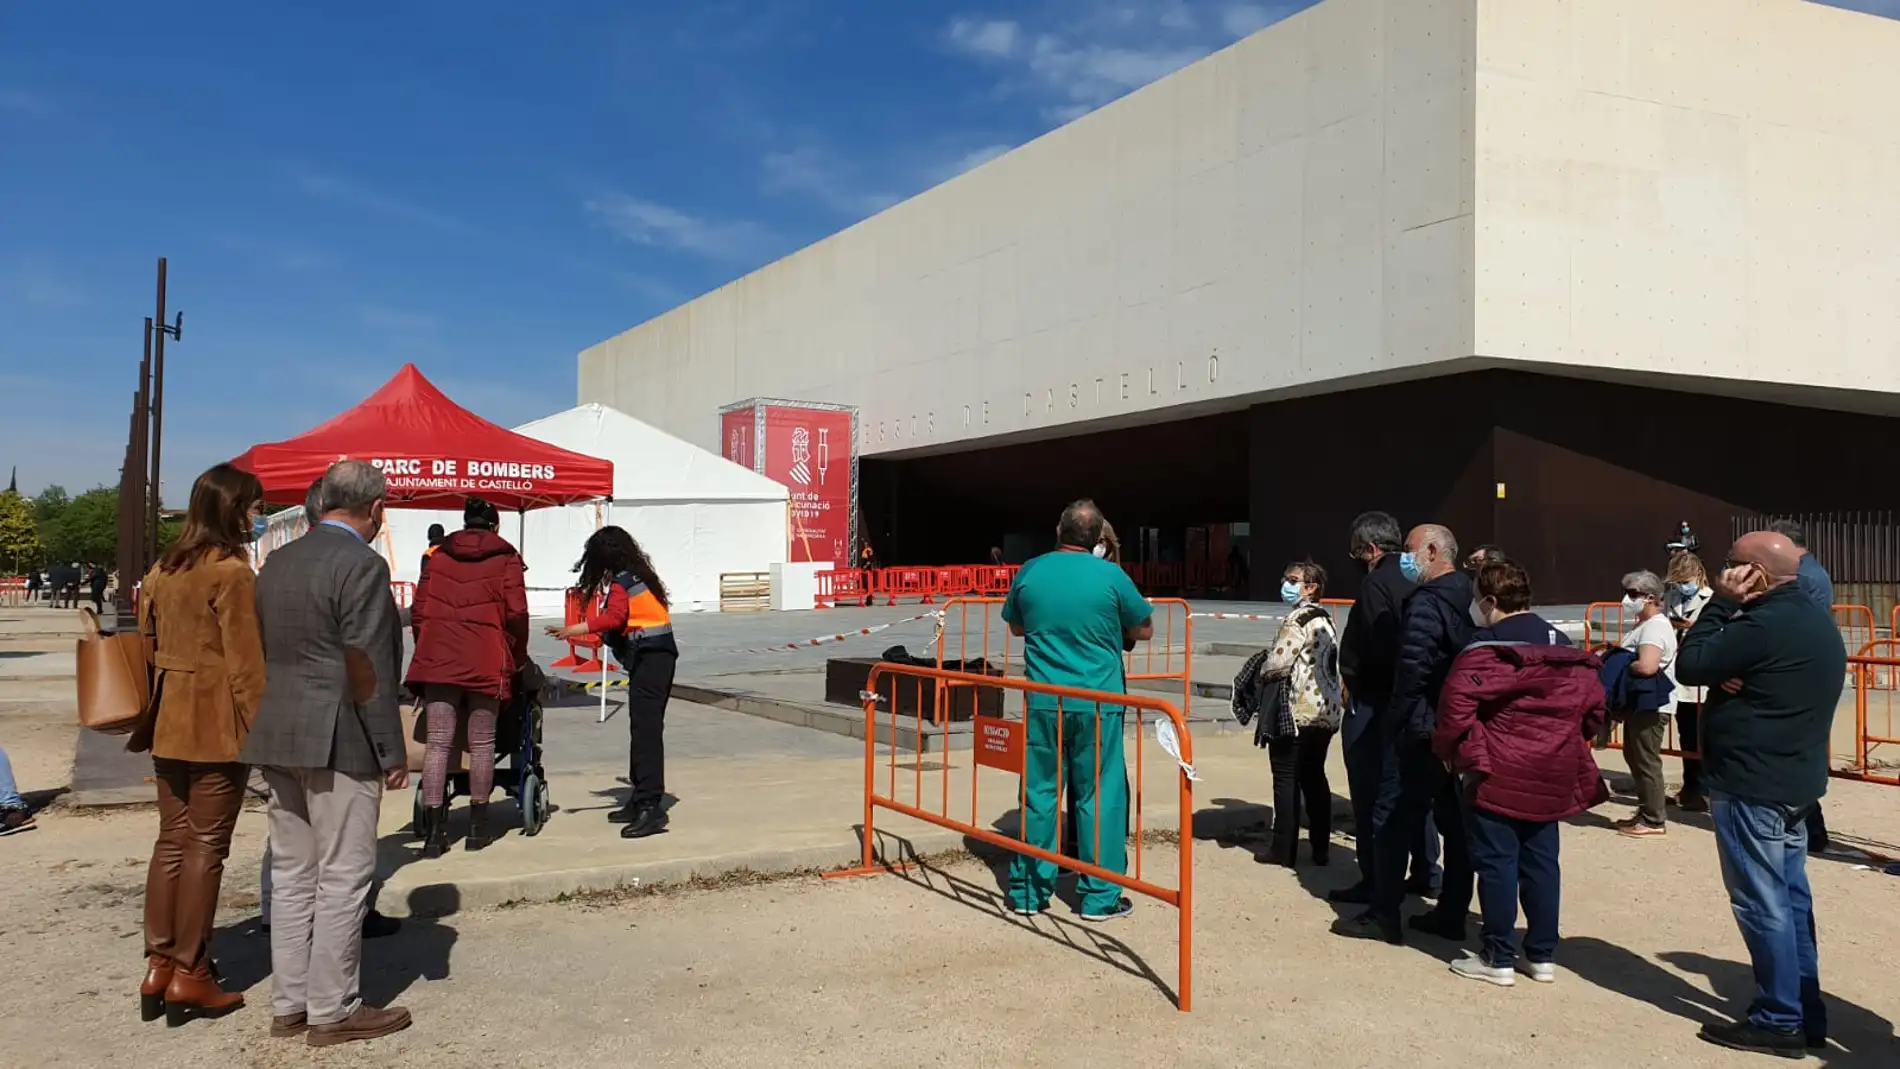 La falta de dosis paraliza la vacunación masiva en el Auditorio de Castelló